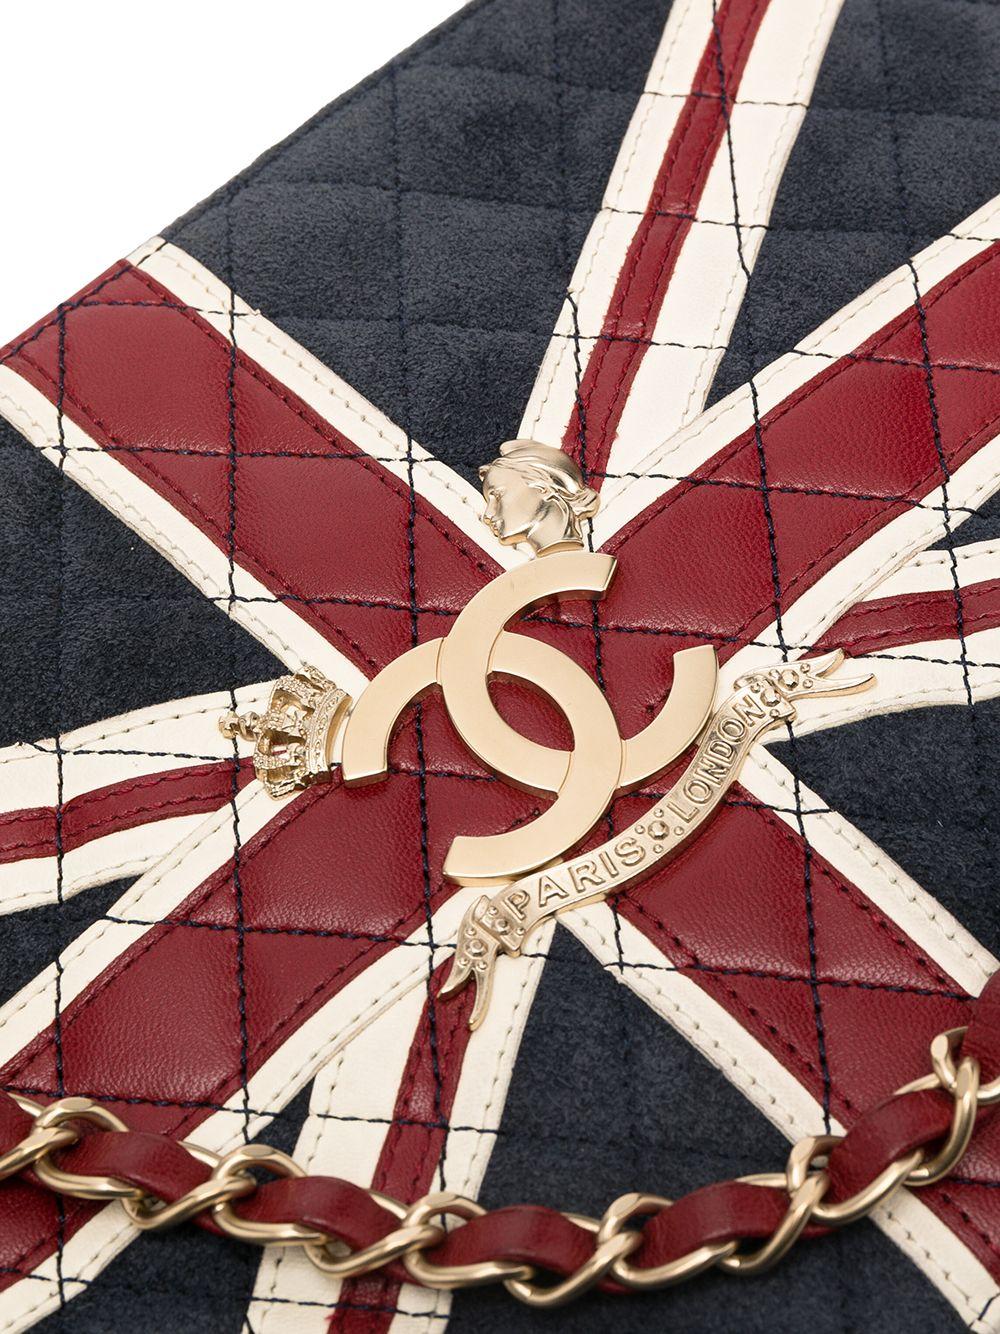 Zeigen Sie Ihren britischen Geist mit dieser kultigen Vintage-Tasche von Chanel. Das Äußere besteht aus marineblauem Wildleder und ist mit einem Union Jack und einem Chanel-Monogramm verziert. Die Tasche wird mit einem Reißverschluss geschlossen und